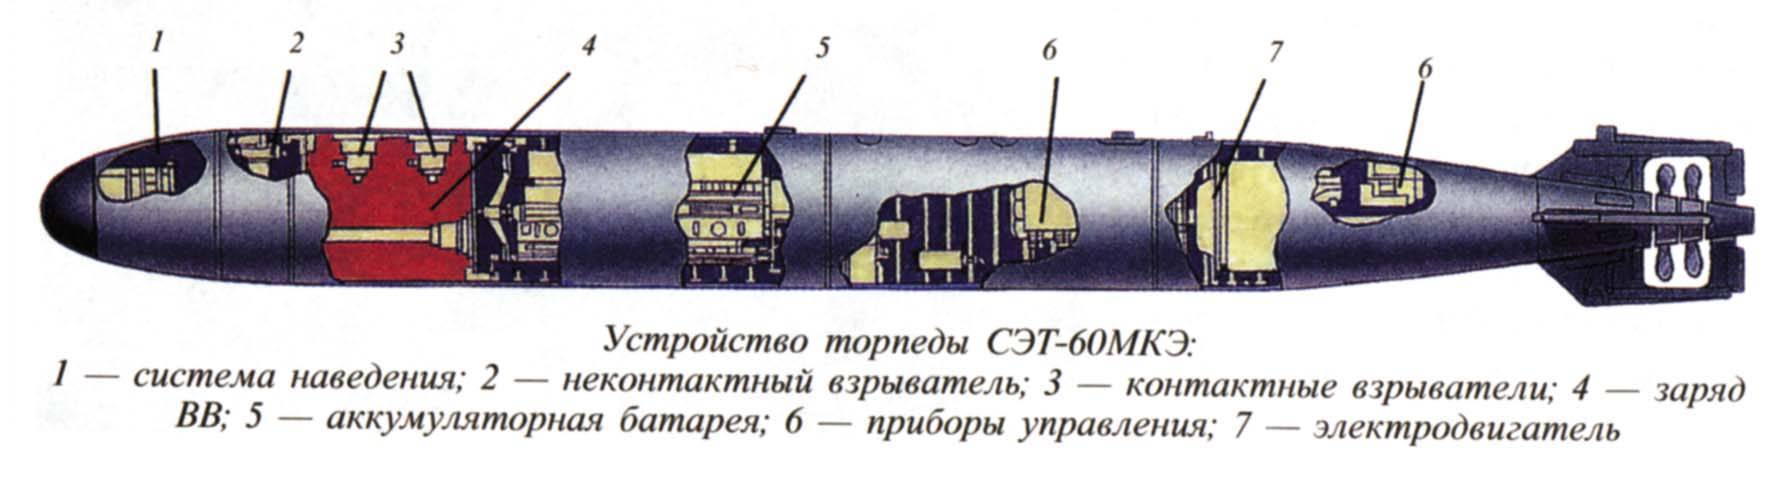 Торпеды 53-65